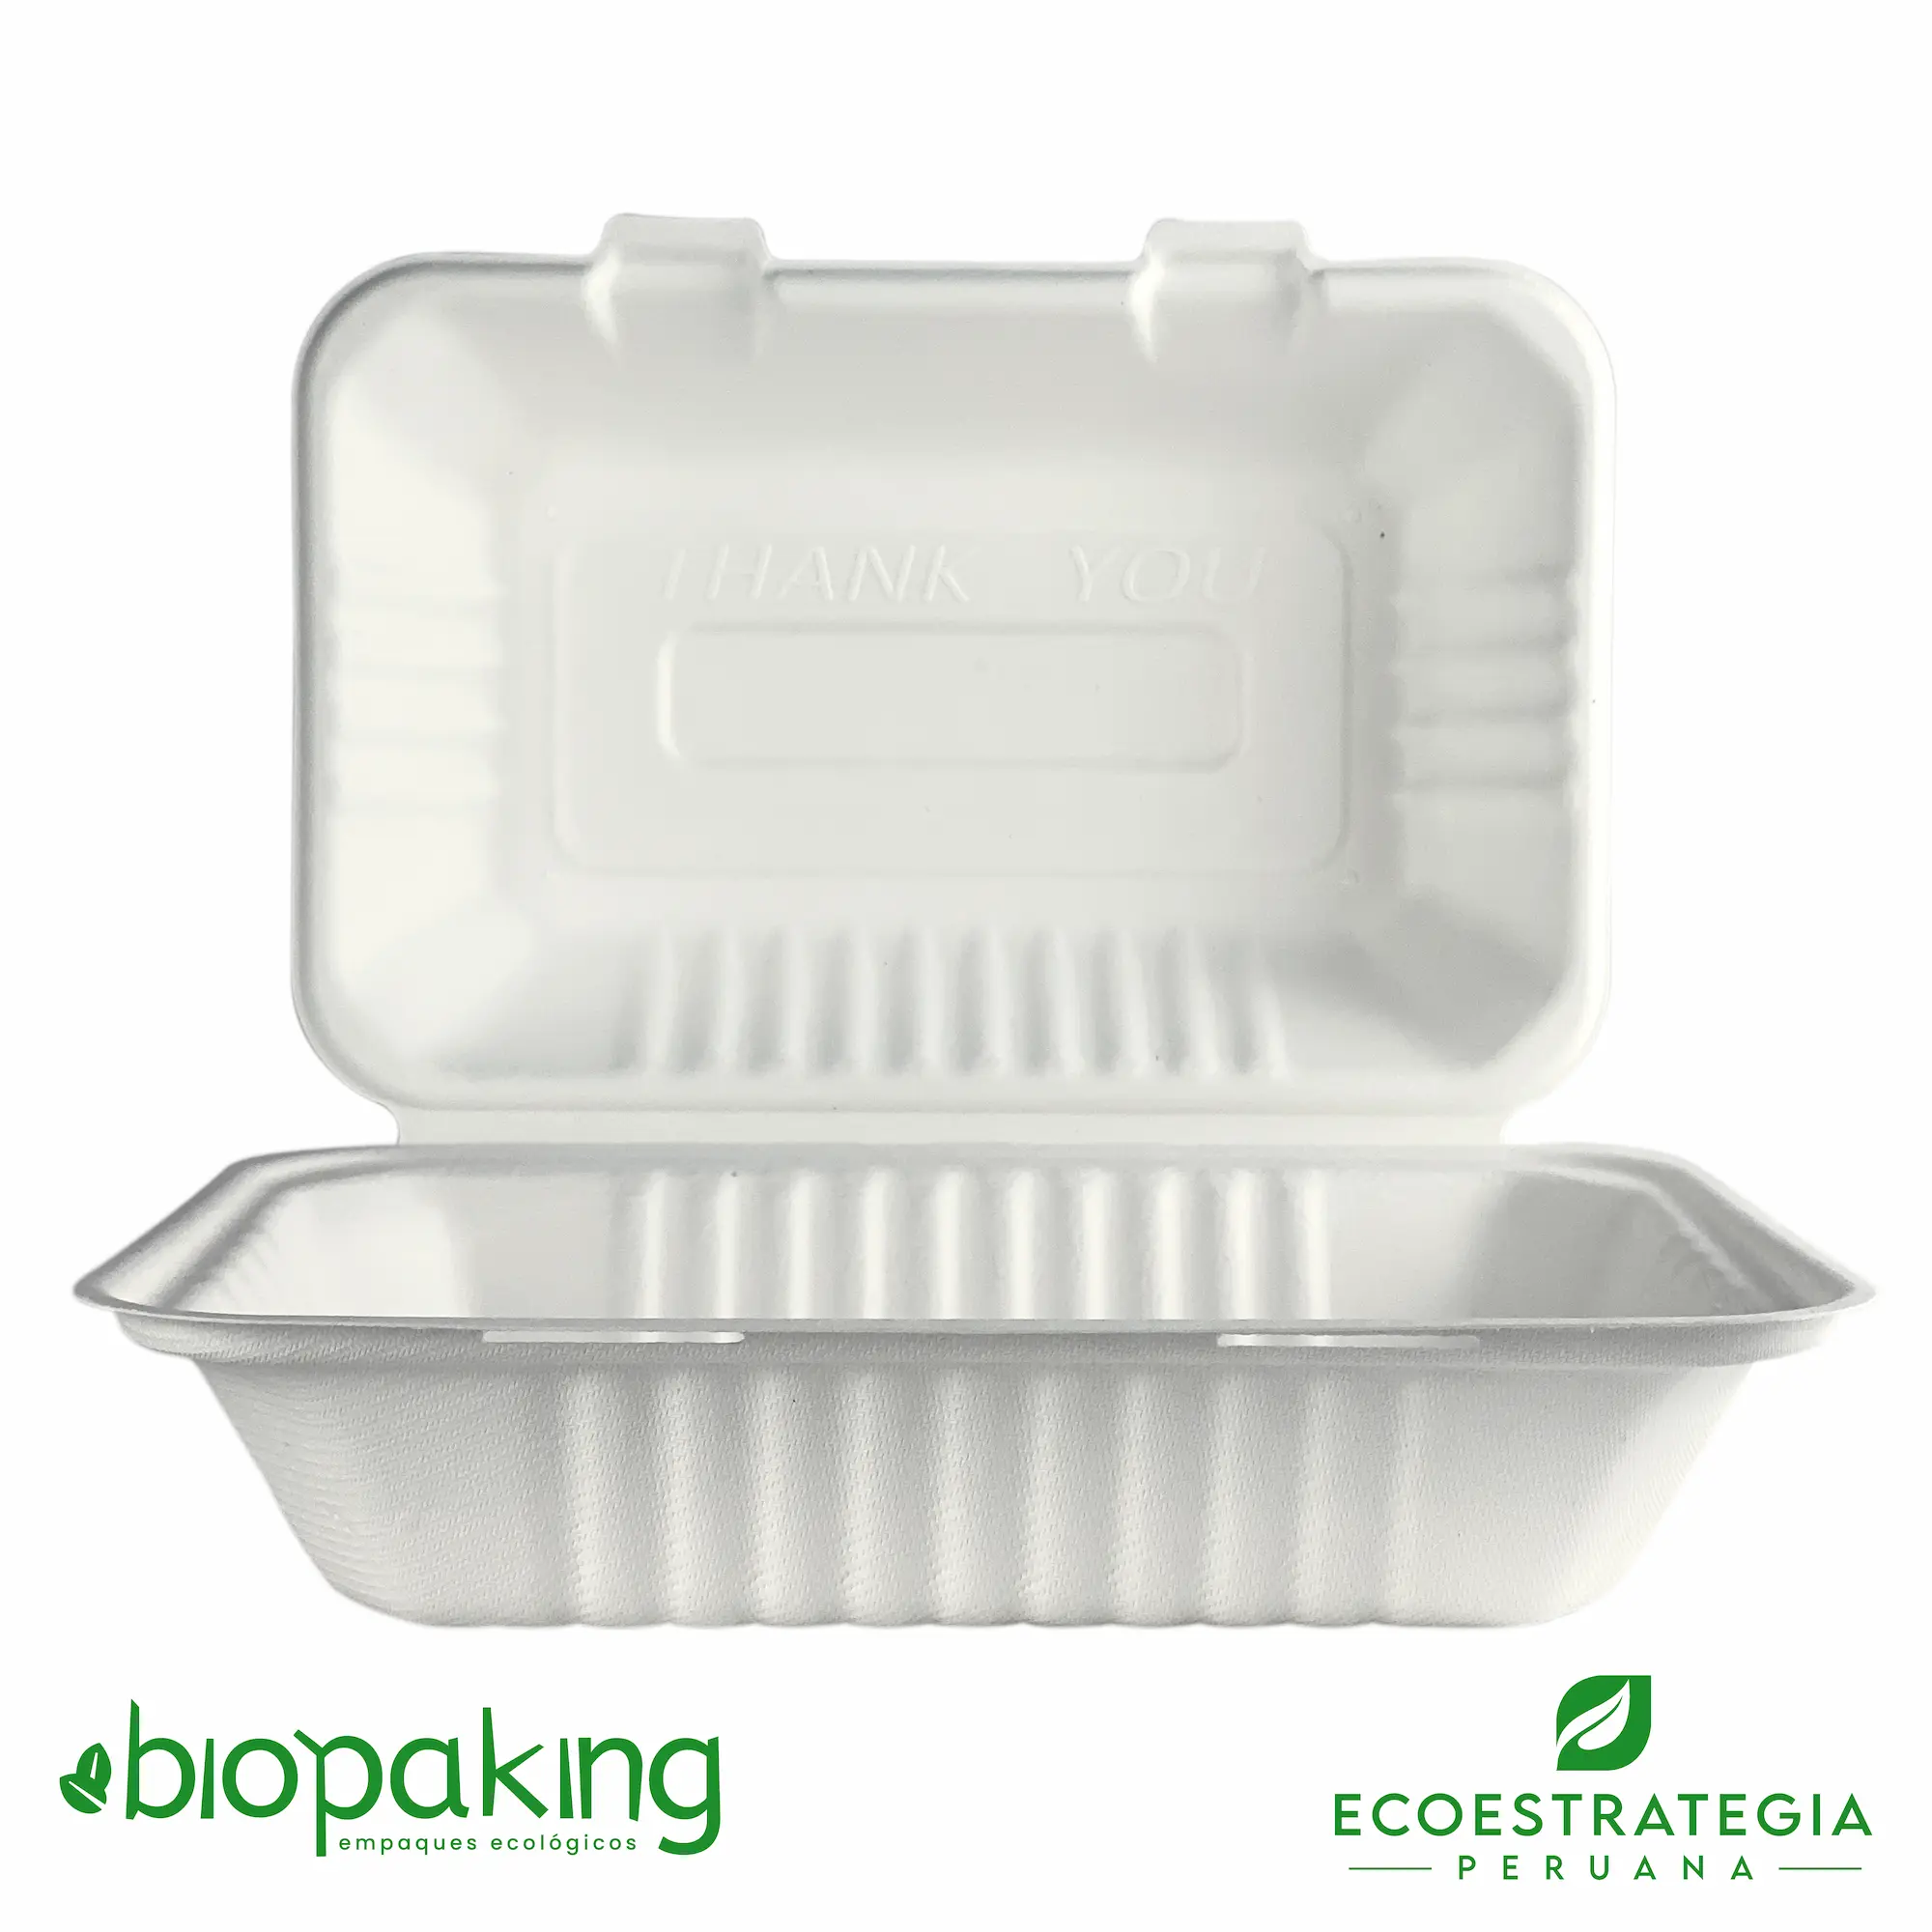  El envase biodegradable ct5 o EP-06 es conocido también como ct5 biodegradable, contenedor ct5 21x16x8, contenedor biodegradable 9 x 6 3”, contenedor cuadrado 900ml, contenedor bisagra 900ml, clamshell biodegradable 900 ml, bg-9x6, Contenedor 5 bioform fibra-ks bagazo de caña, envase ct5, BCS96, fbox6x9, 0111125, BCS06, TP002 (ct5), Envase 9x6 pulgadas pulpa de caña de azúcar, Contenedor Eco 900 ml (ct5), contenedor eco 900 fibra de caña, Contenedor ct5, Envase ct5, contenedor 5 fibra, ct5 9x6, ct5 biodegradable perú, box mediano, envase biodegradable para menú, envase genérico biodegradable, v5, envase biodegradable 23 x15, importadores de envases biodegradable ct5, distribuidores ct5 biodegradable, mayoristas ct5 biodegradable